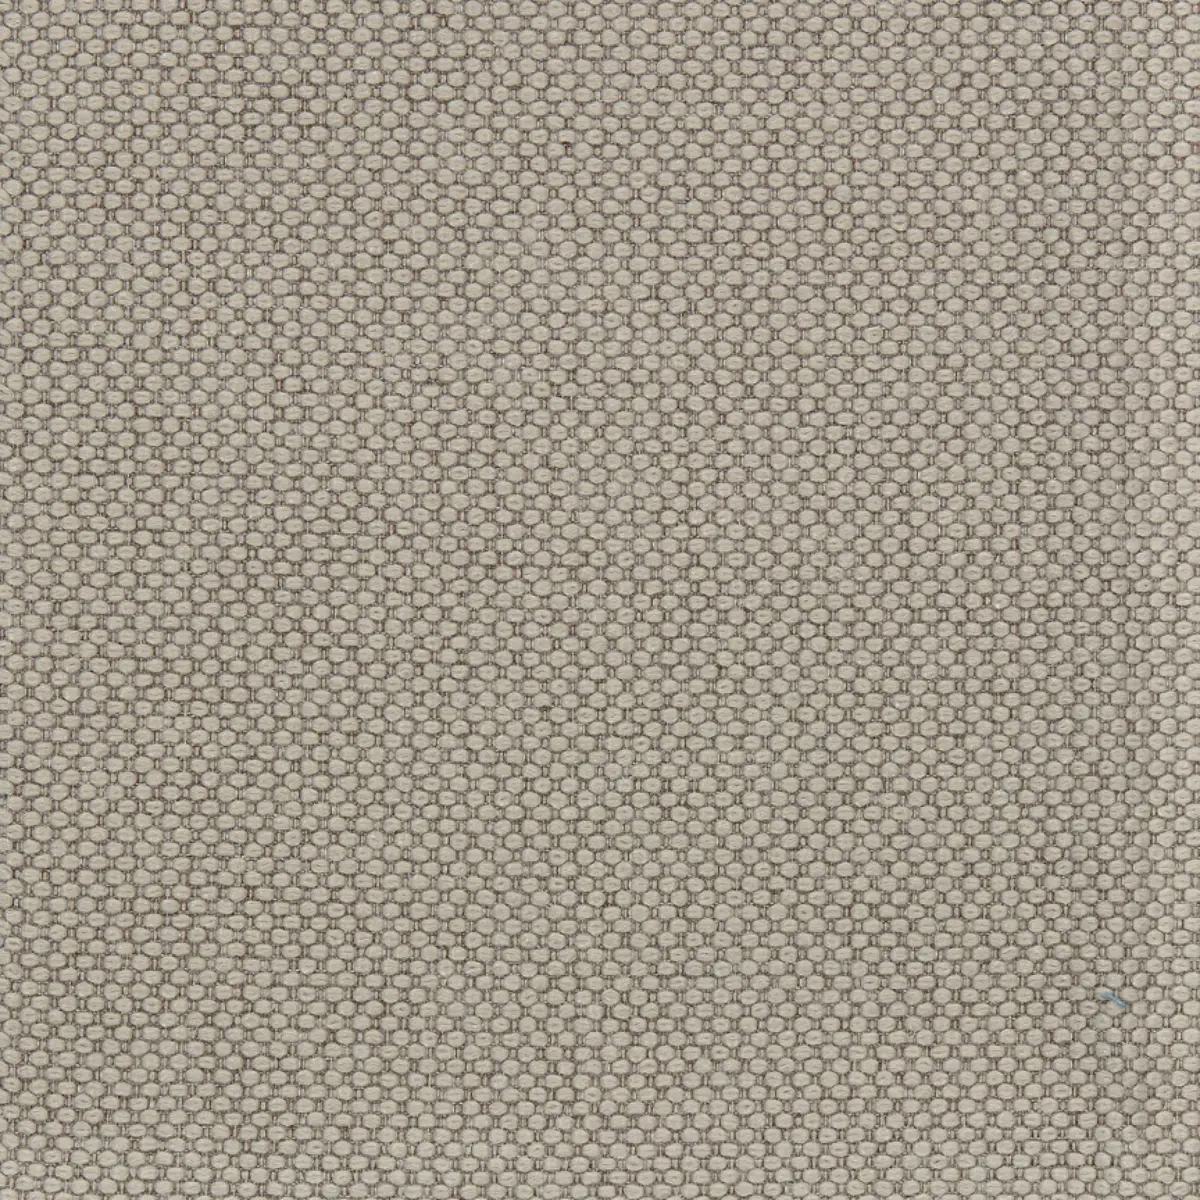 Fabric sample Merit 0028 brown